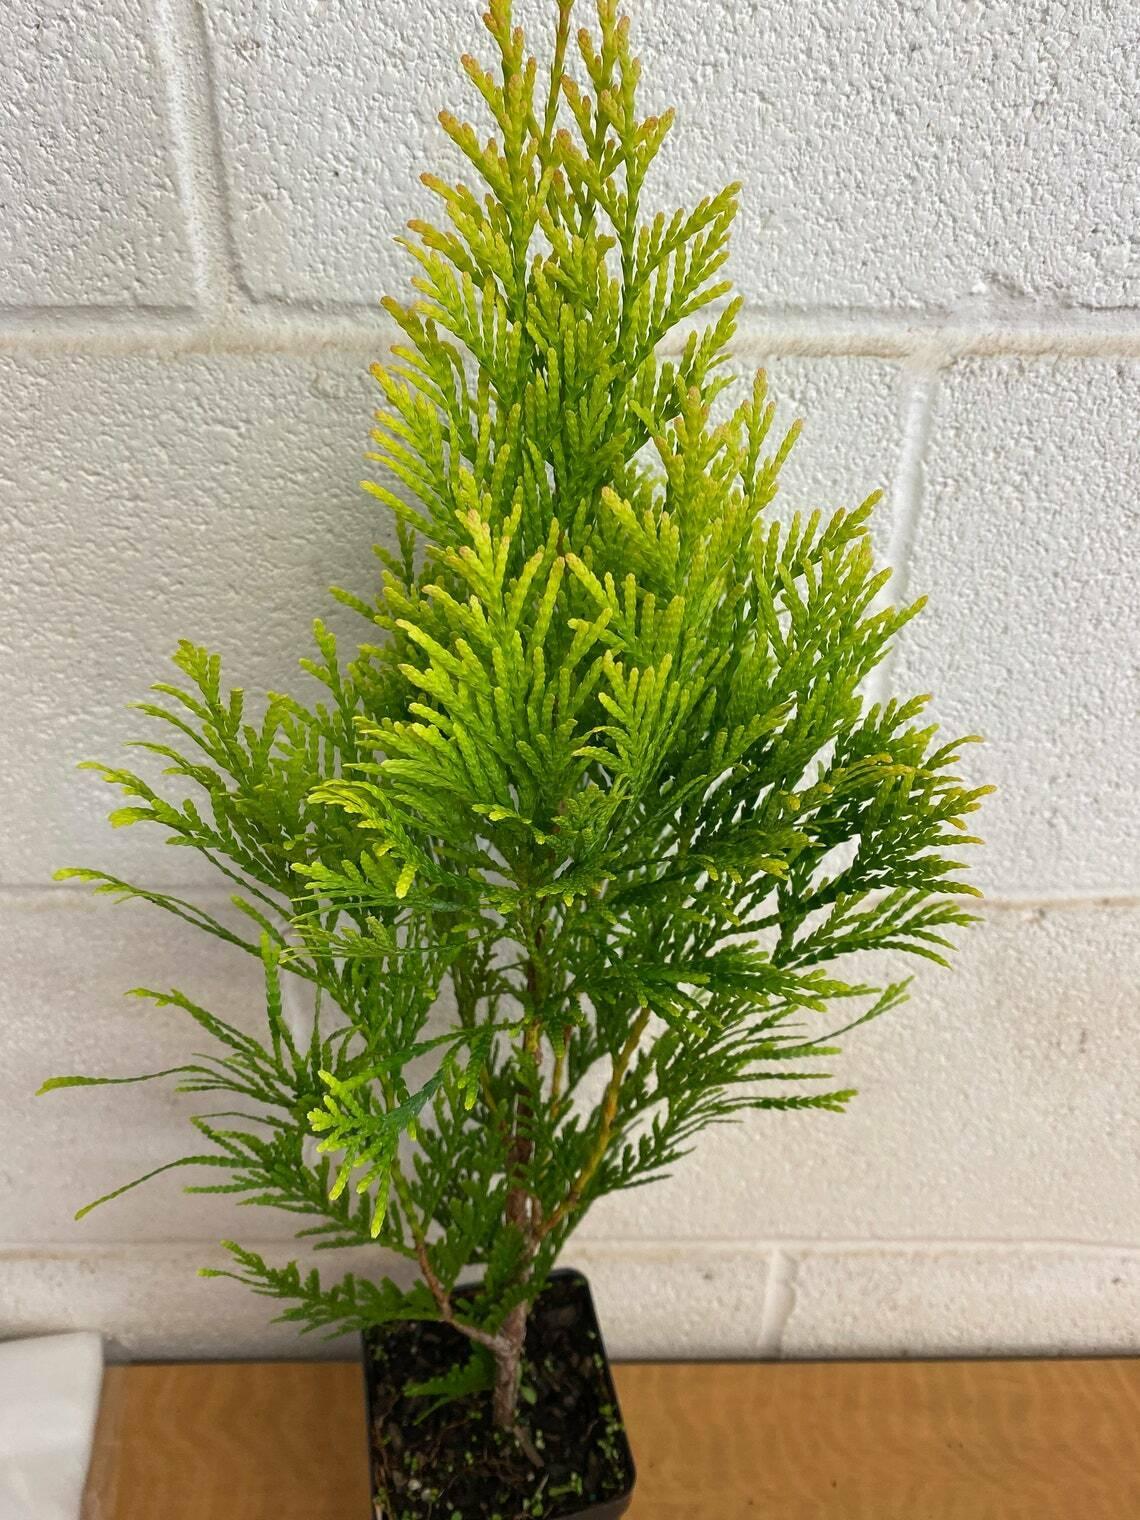 Golden Arborvitae Shrub/Tree - Live Plant - 8-14" Tall Seedling - Quart Pot - The Nursery Center